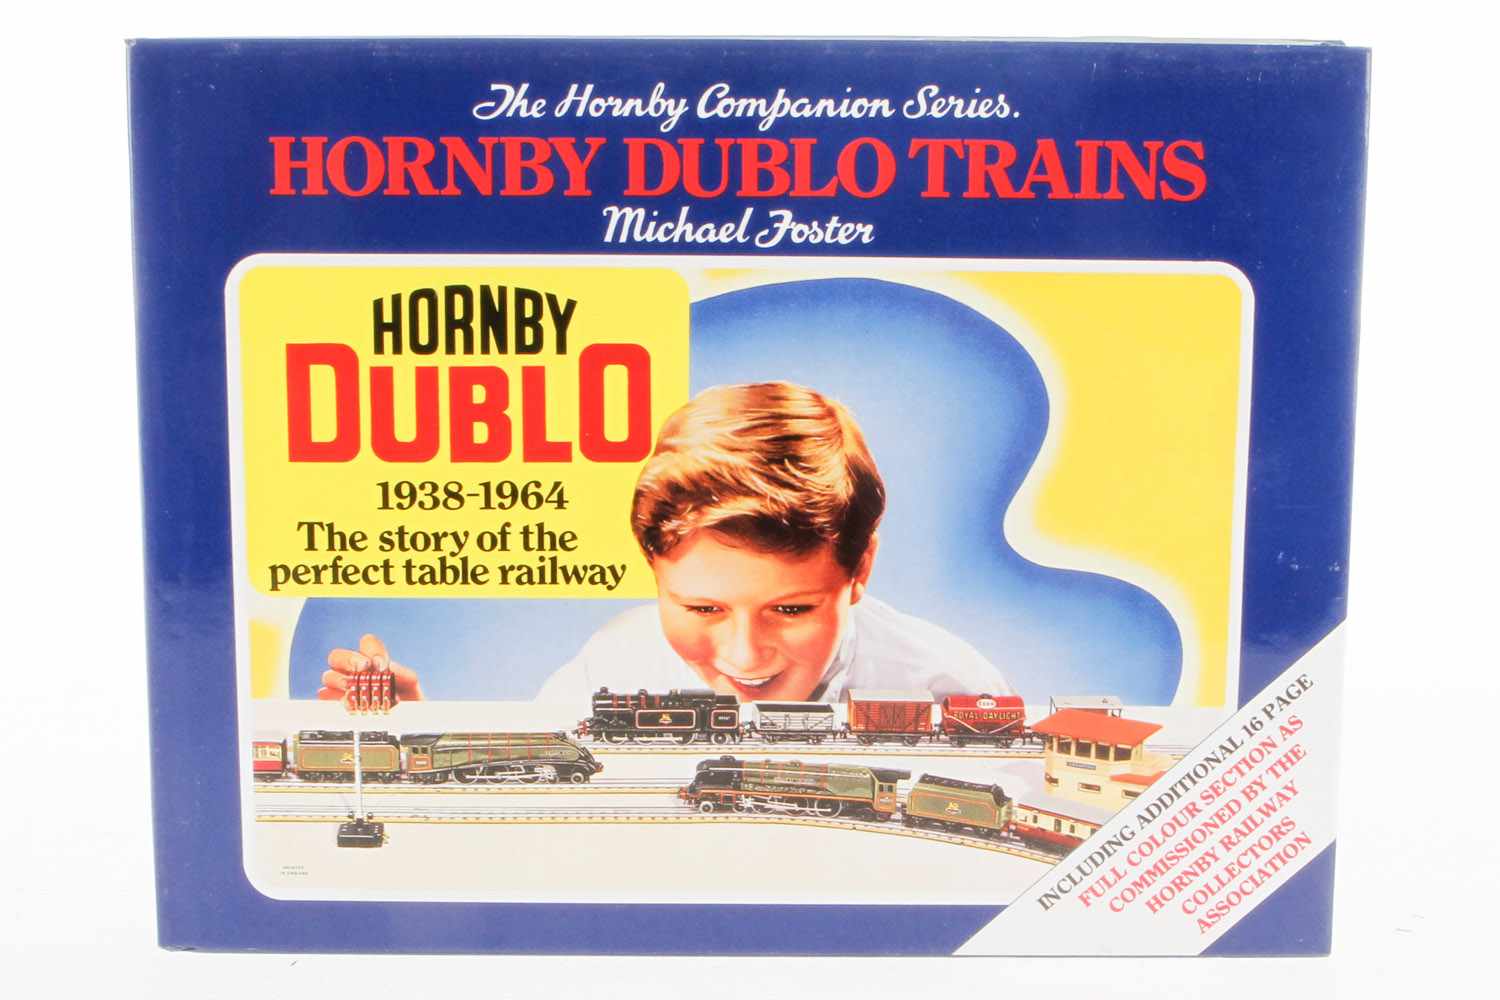 Buch "Hornby Dublo Trains", 1993, 416 Seiten, Alterungsspuren